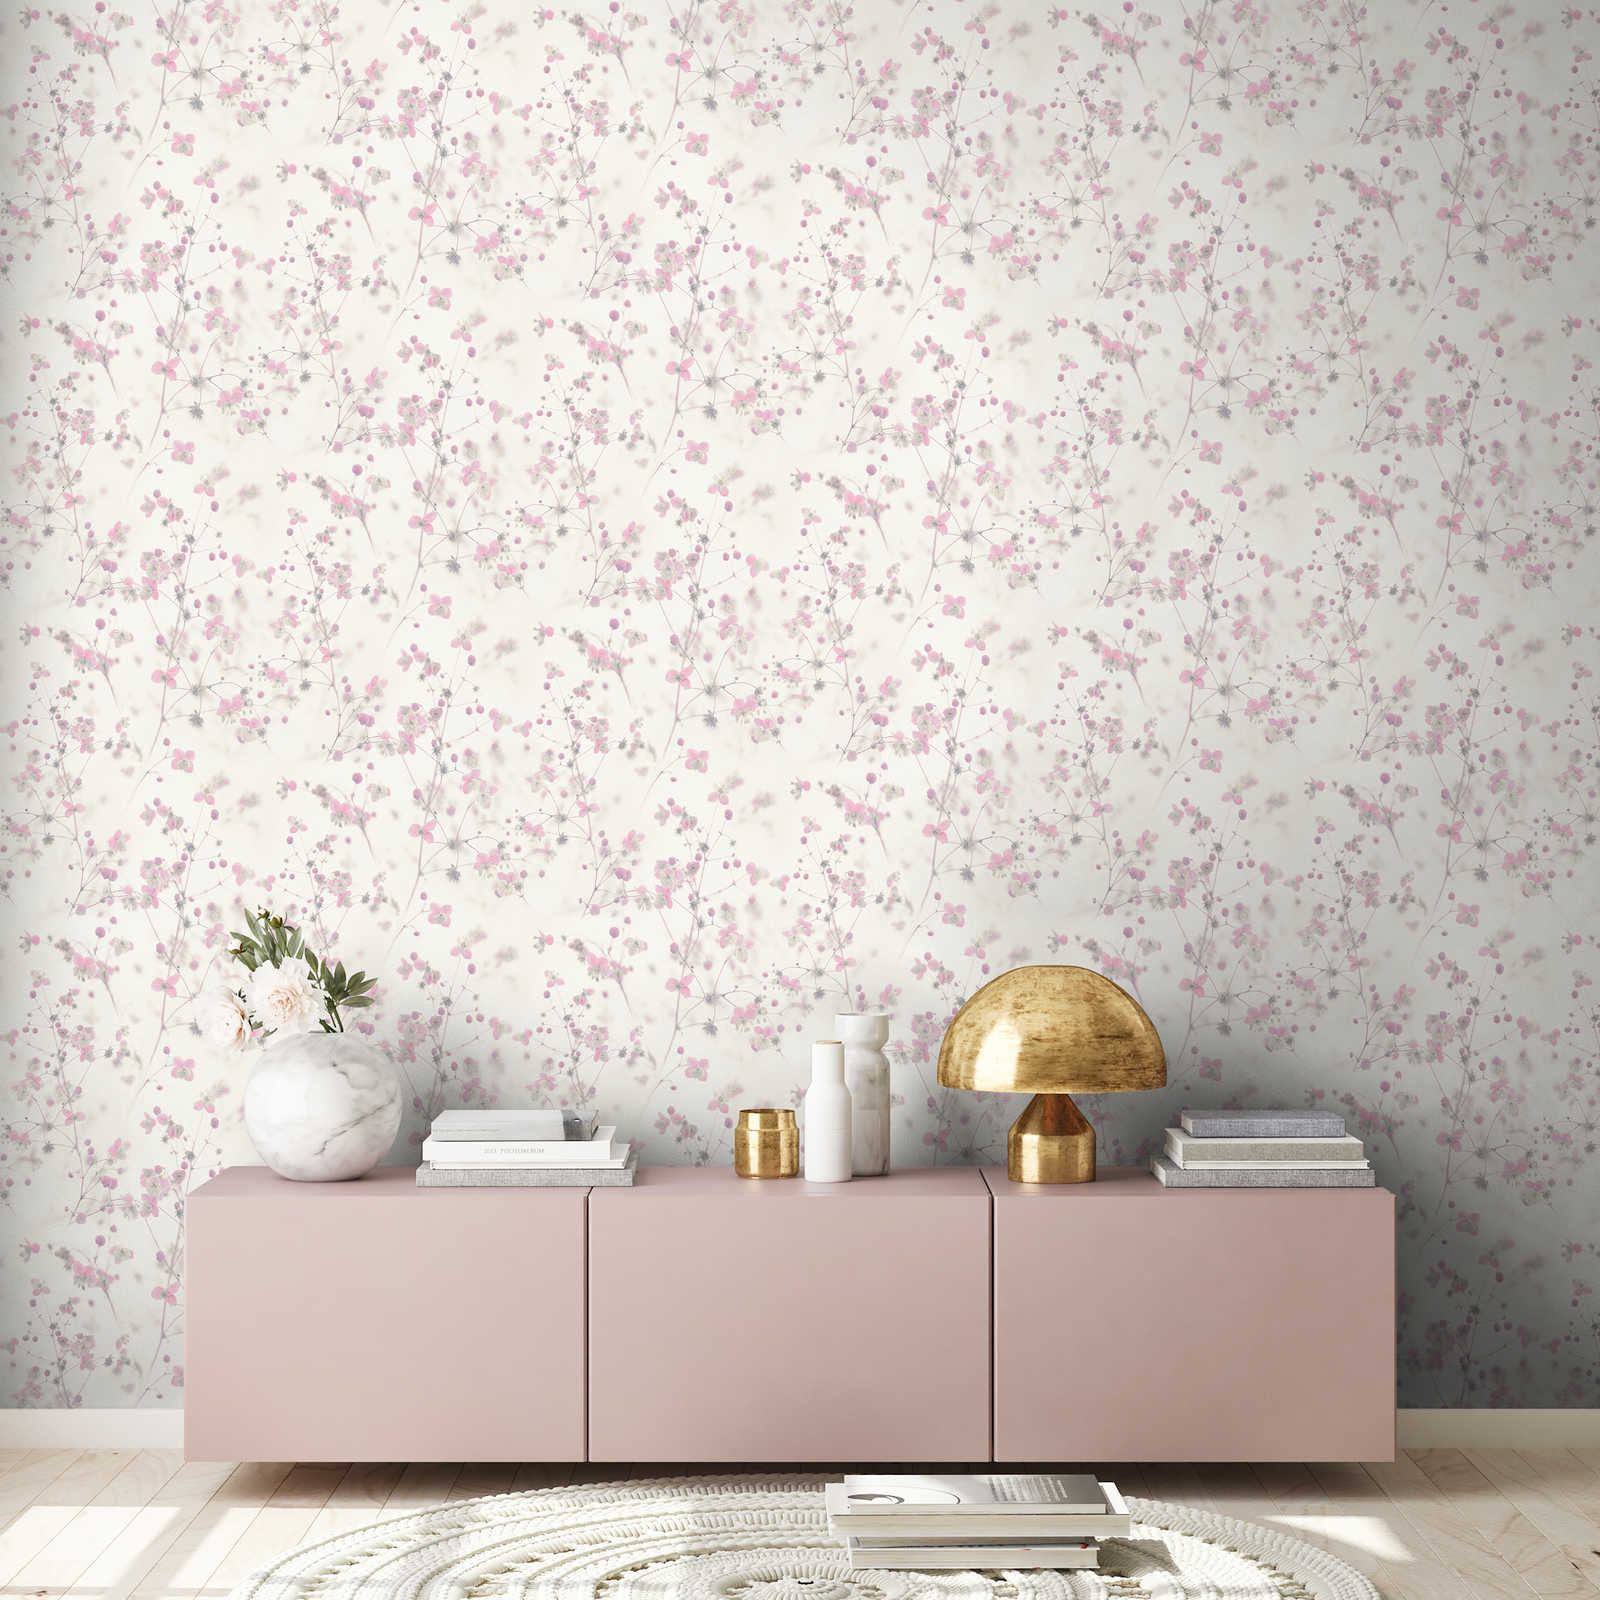             Papier peint rustique moderne motif fleurs - gris, rose
        